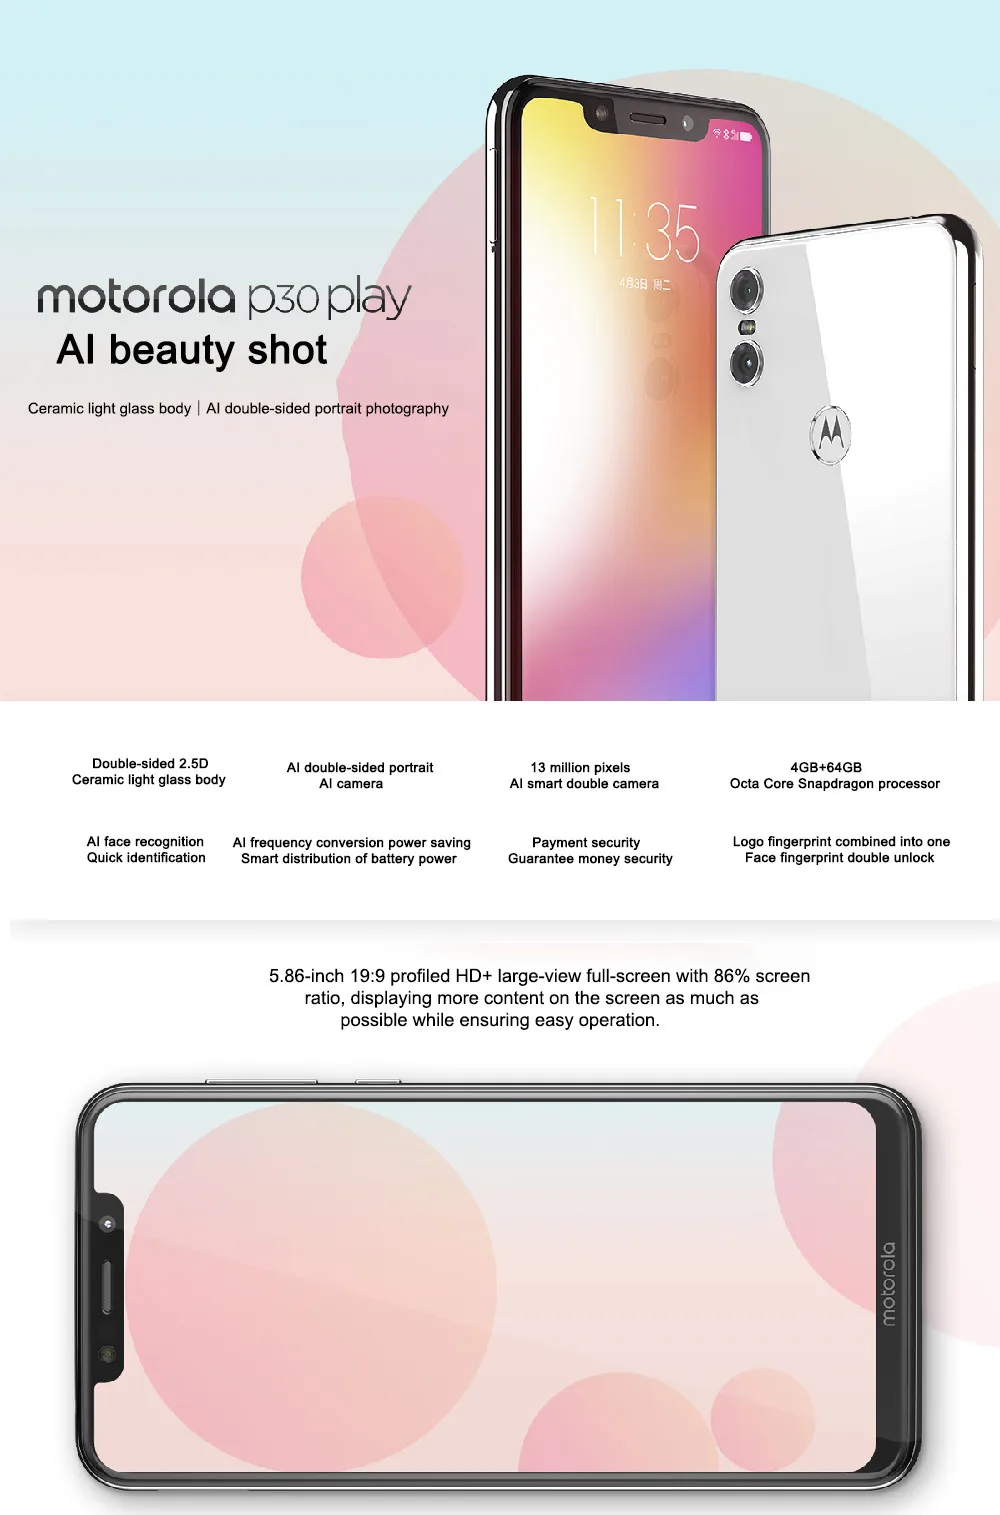 Motorola MOTO P30 Play с глобальной прошивкой, 4G, 64G, LTE, Восьмиядерный процессор Snapdragon 625, 1,8 ГГц, ZUI 4,0, двойная камера с отпечатком пальца, 13,0 МП, 1080 P, телефон